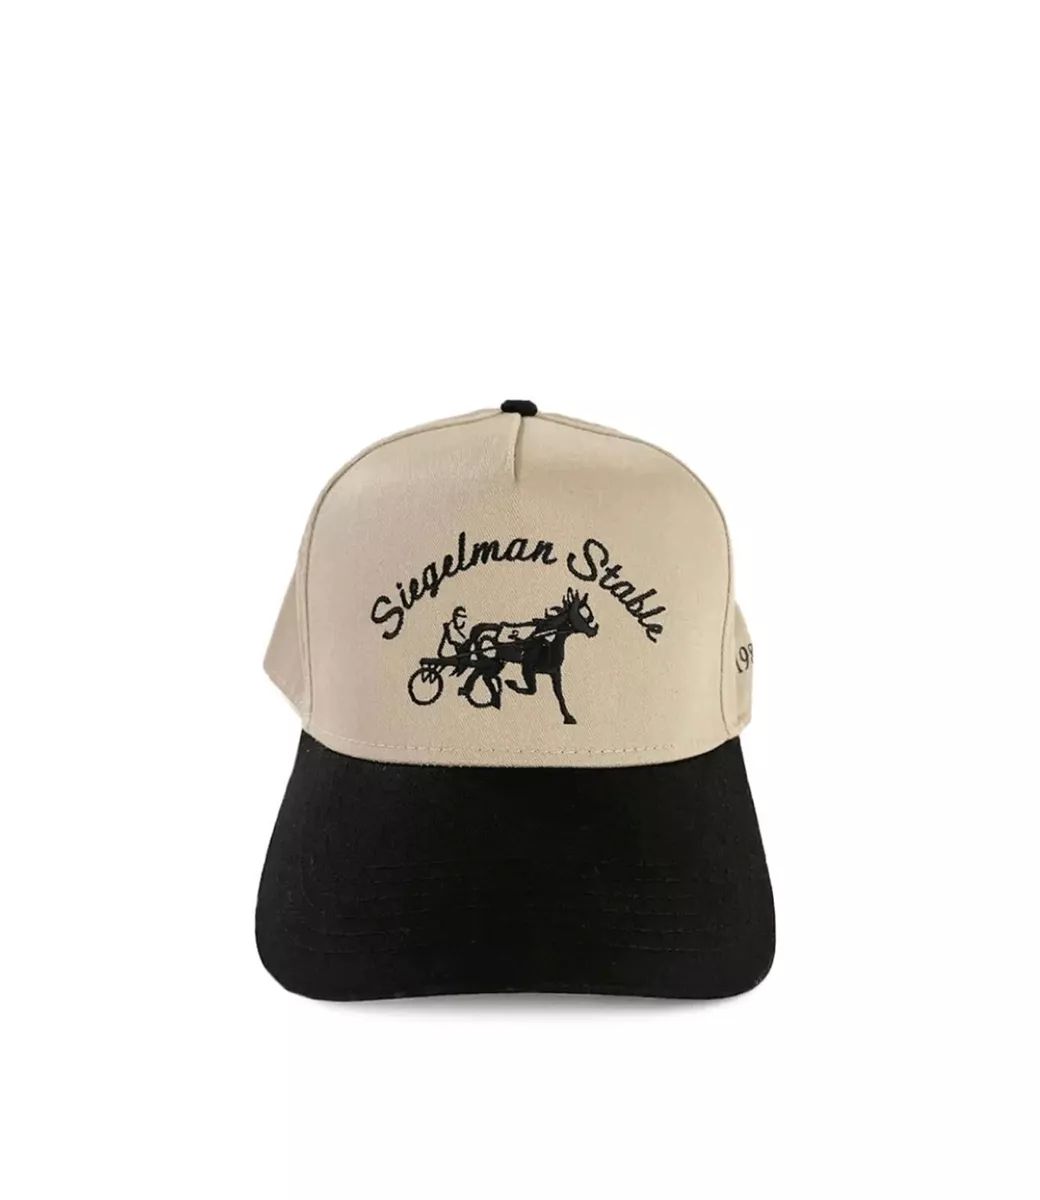 Siegelman Stable Hat | eBay US